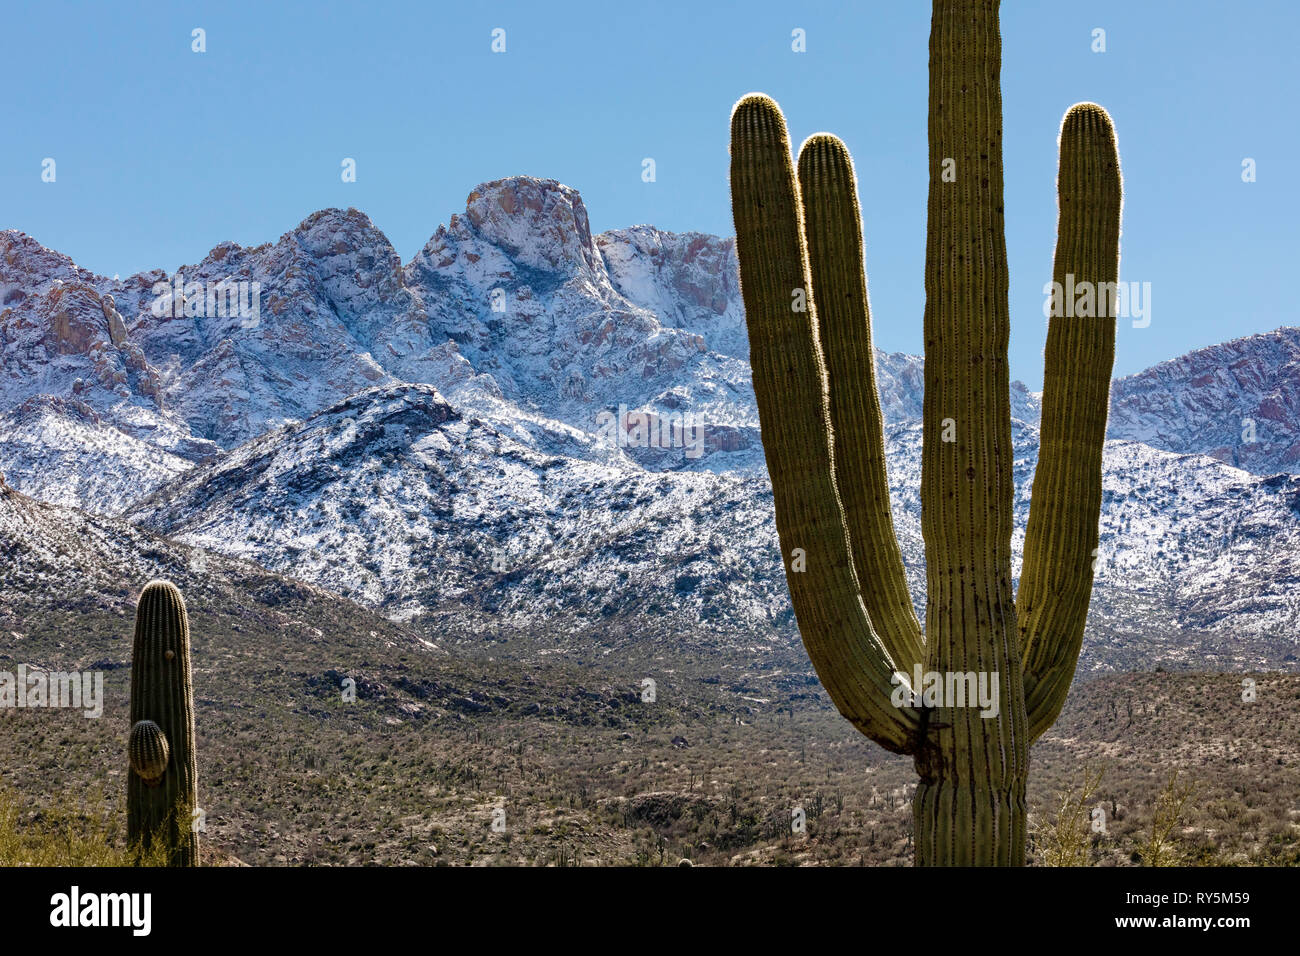 La nieve fresca en Pusch Ridge, Catalina State Park, en Tucson, Arizona, cactus gigante saguaro (Carnegiea gigantea) en primer plano. Foto de stock